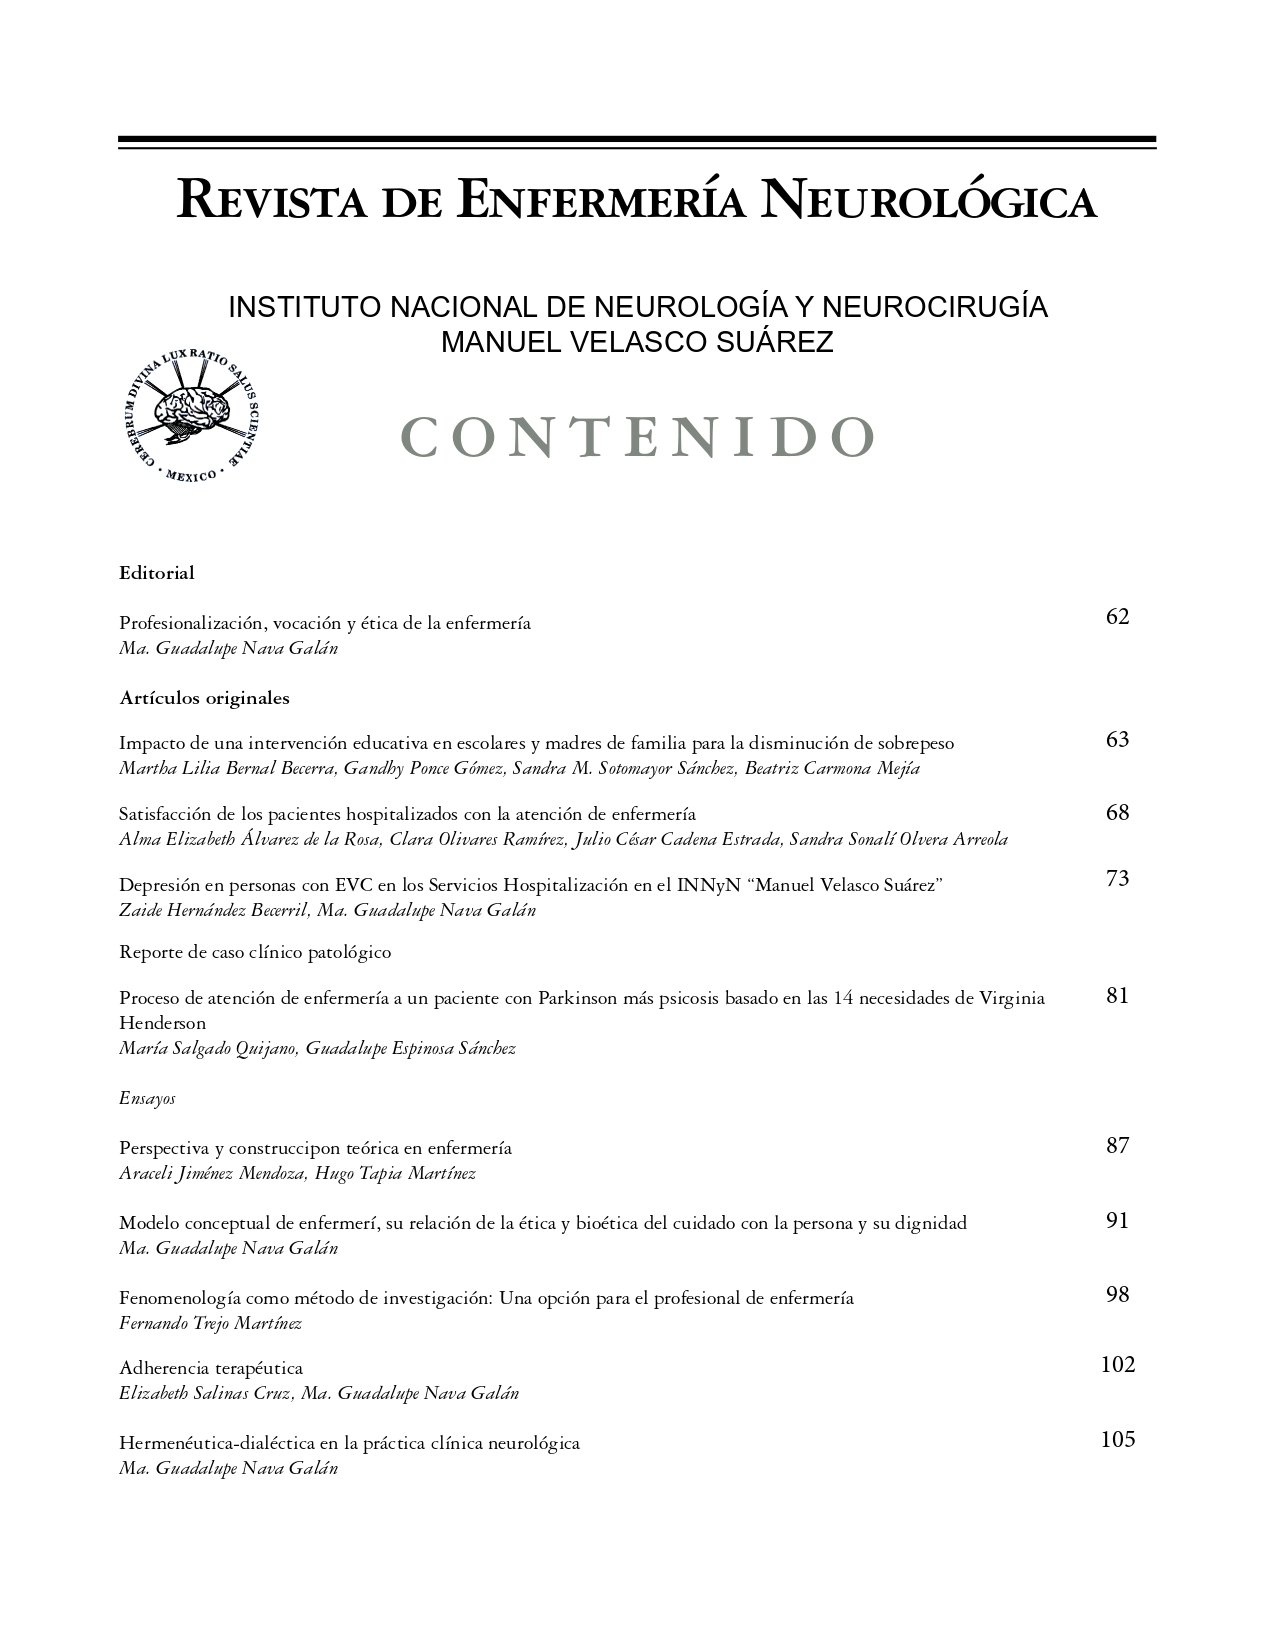 Modelo conceptual de enfermería, su relación de la ética y bioética del  cuidado con la persona y su dignidad | Revista de Enfermería Neurológica